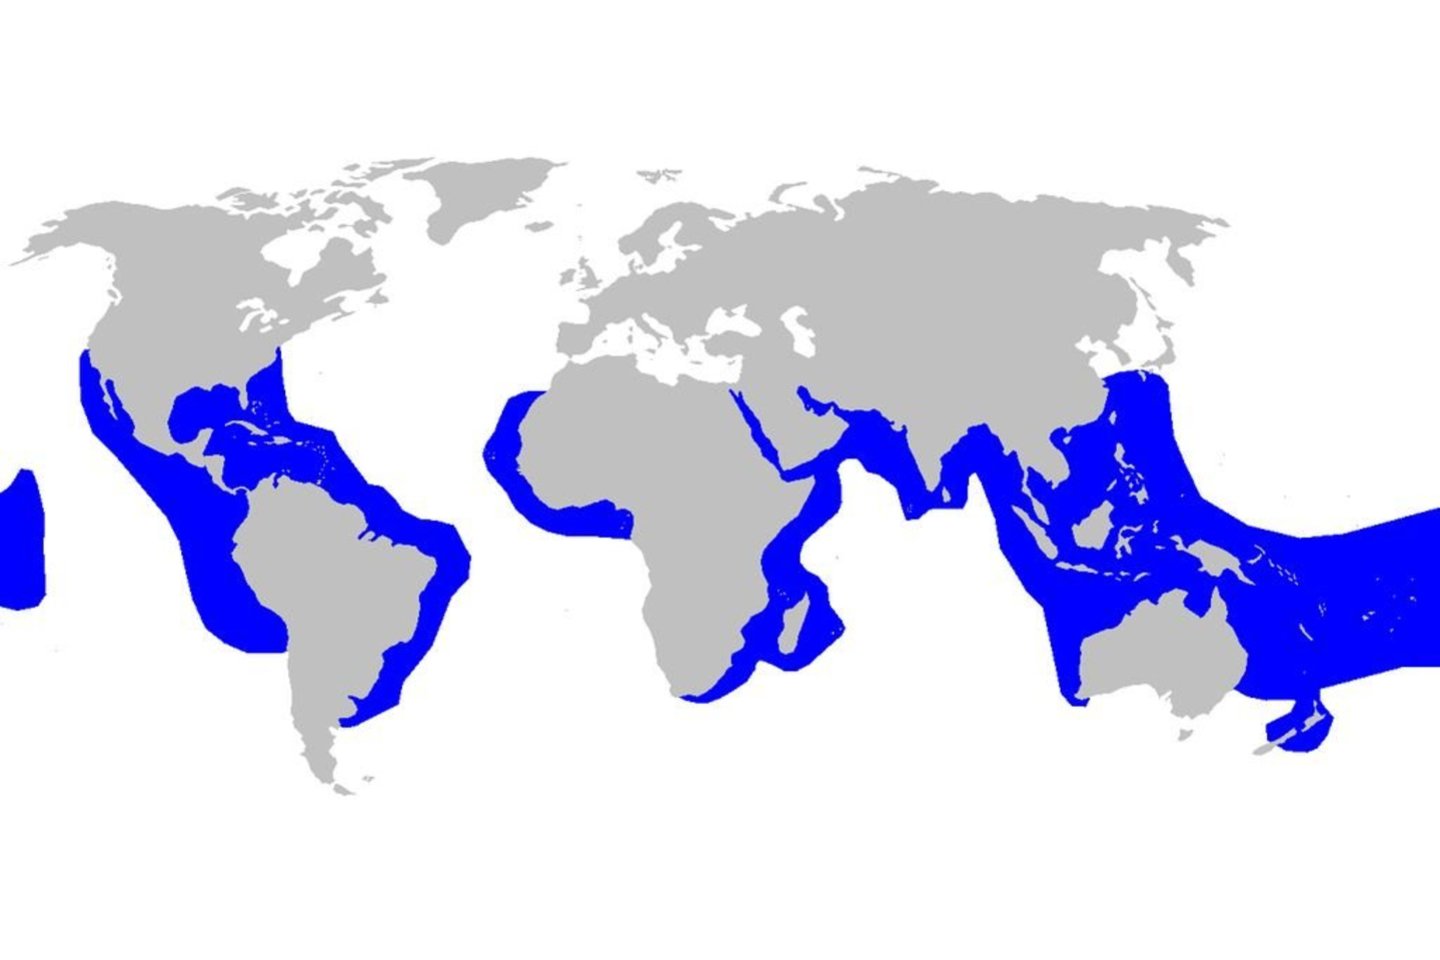  Tigrinių ryklių arealas. Akivaizdu, kad Raudonoji jūra (su Egipto Hurgada) į jį patenka, o Viduržemio – nelabai.